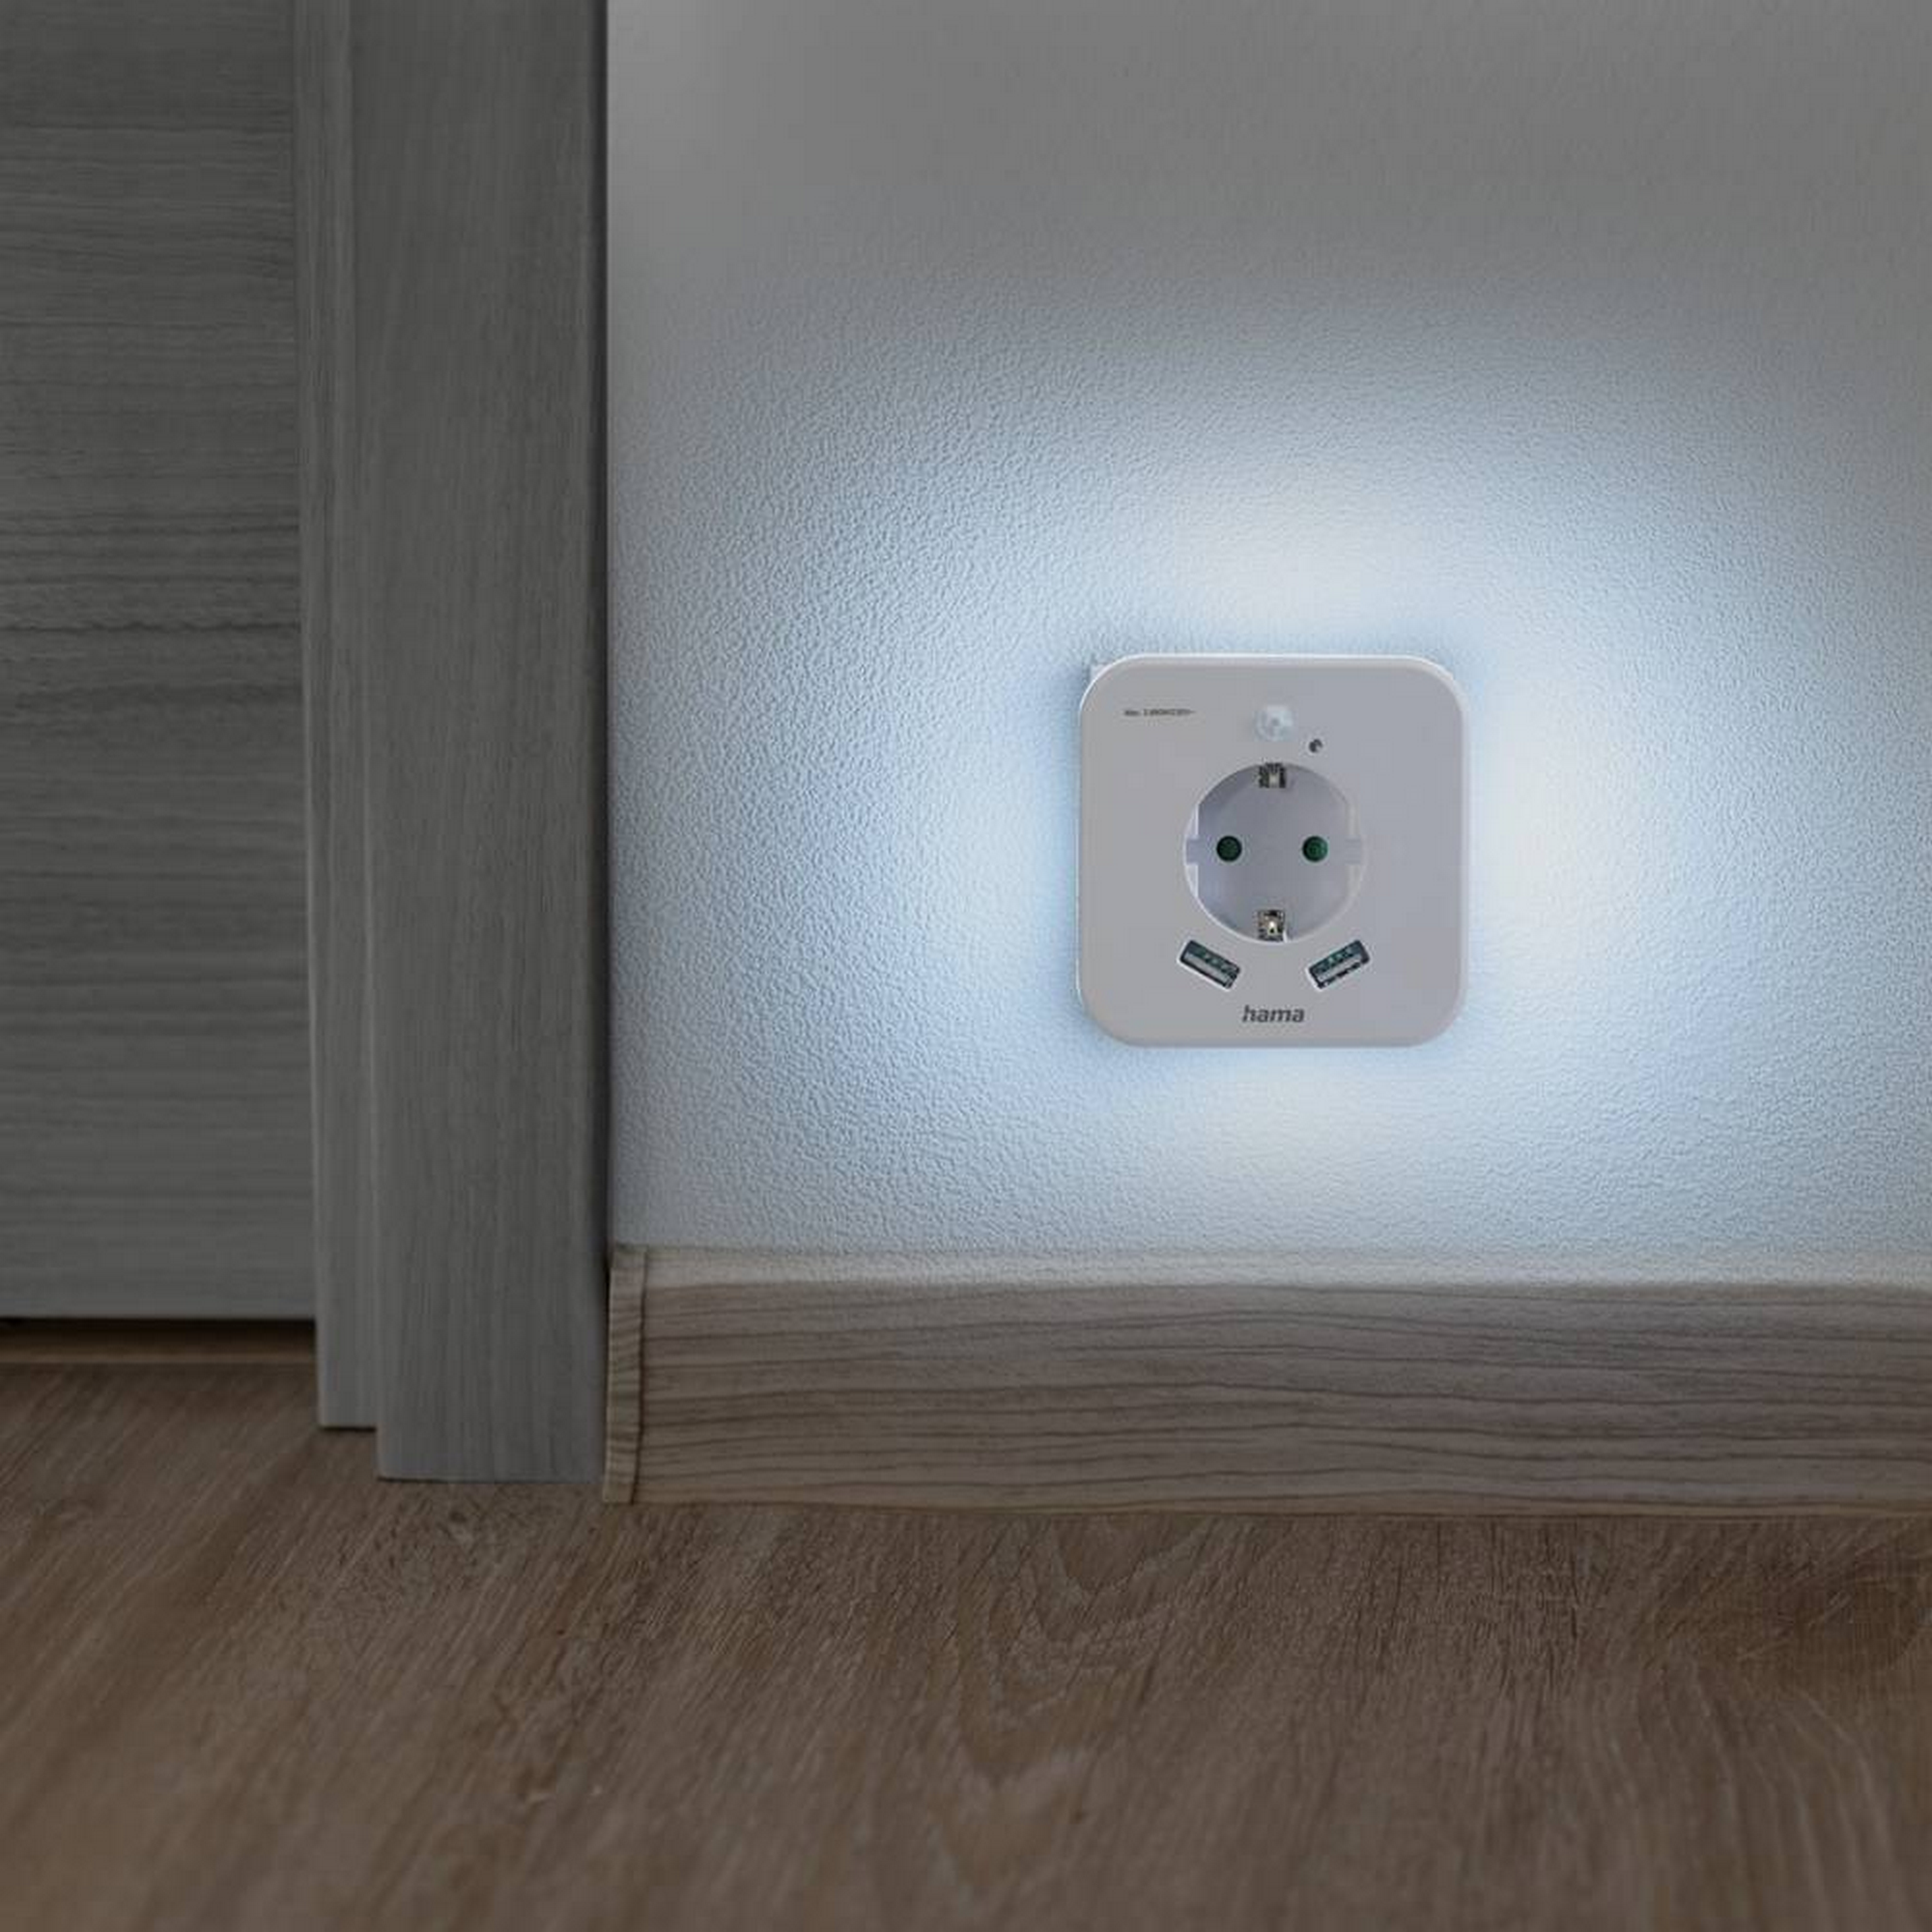 LED-Nachtlicht mit Steckdose, 2 USB-Ausgänge, Bewegungs- und Lichtsensor + product picture